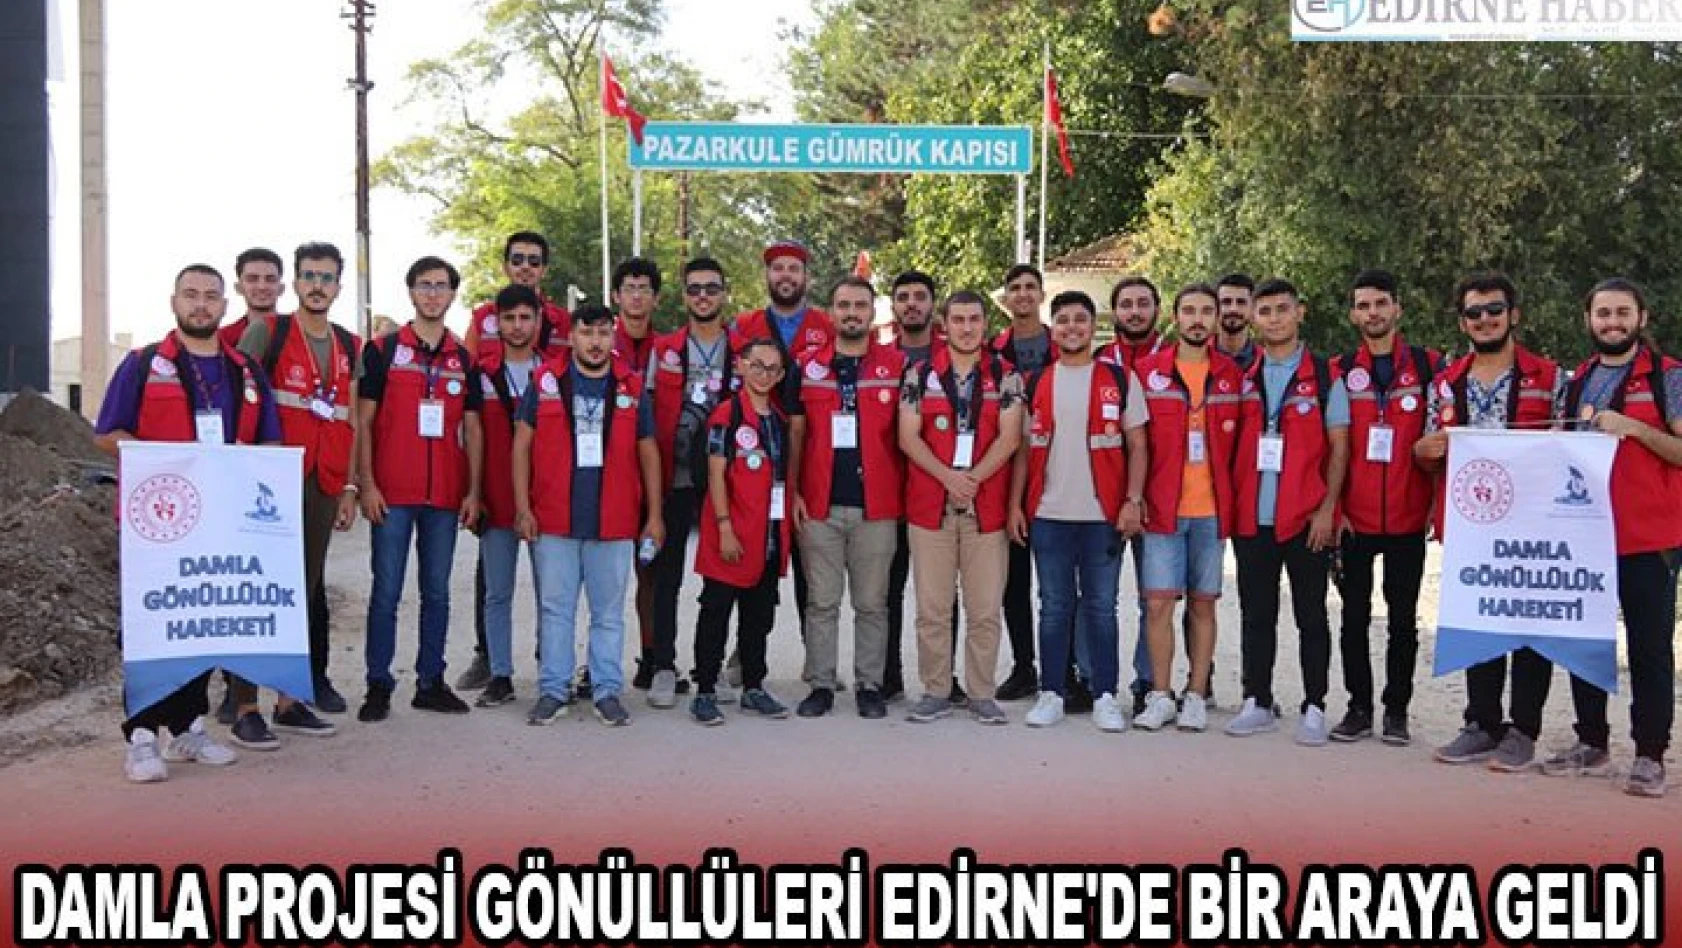 Damla Projesi gönüllüleri Edirne'de bir araya geldi